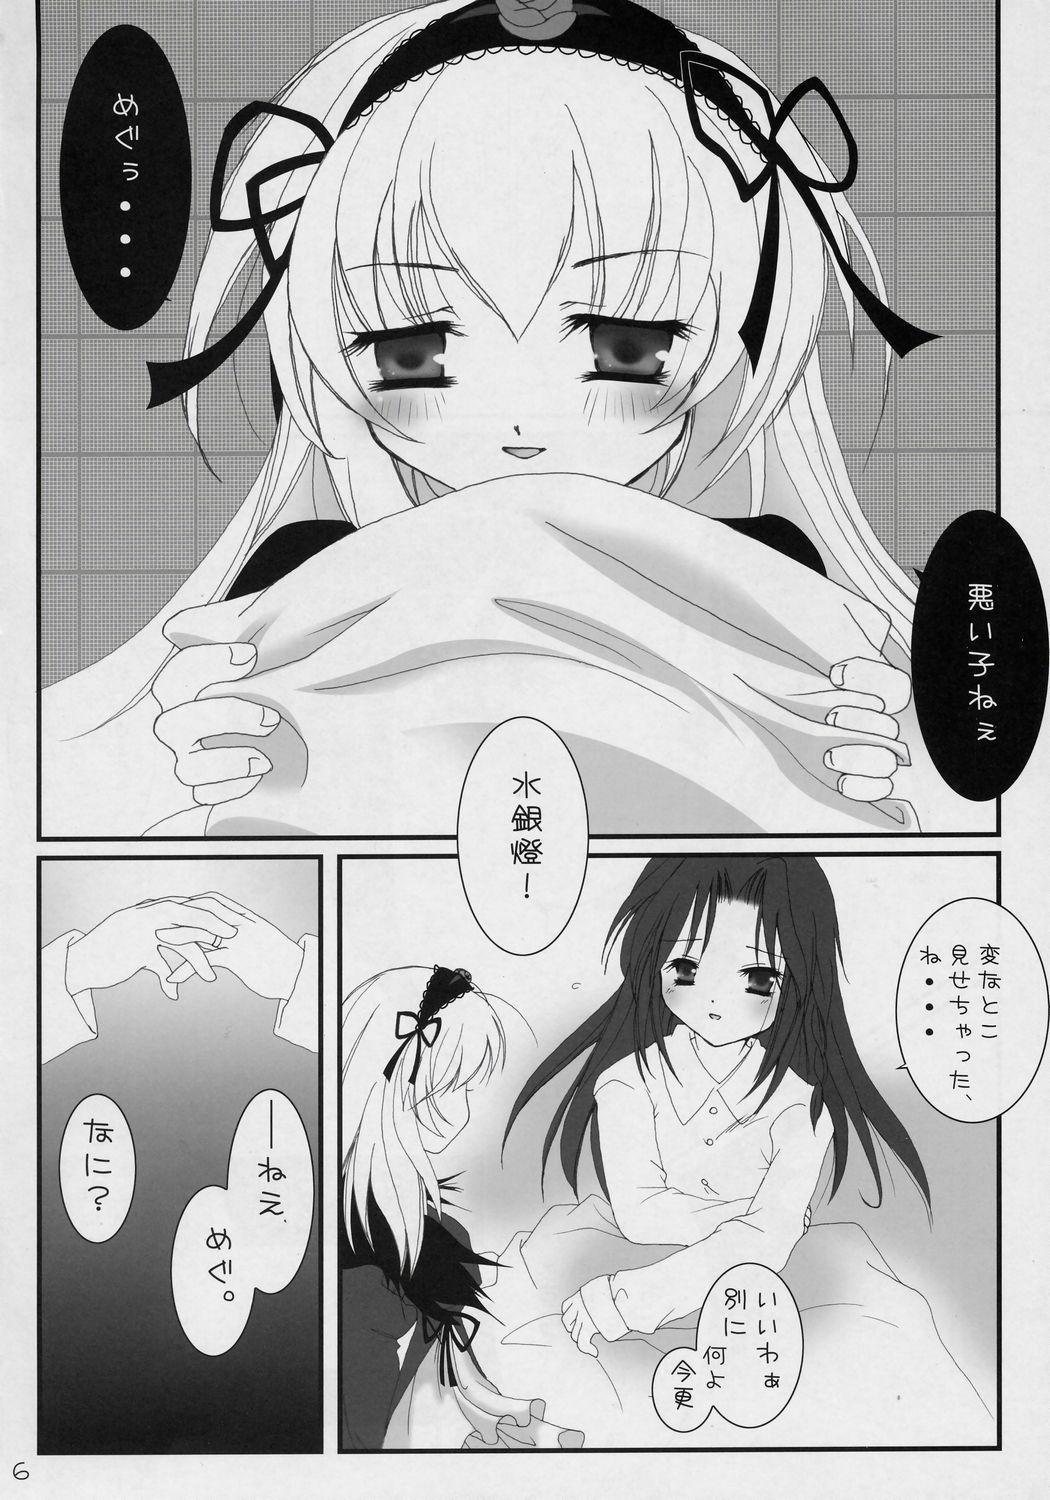 Fellatio - Koufuku no Omocha - Rozen maiden Sex Party - Page 5